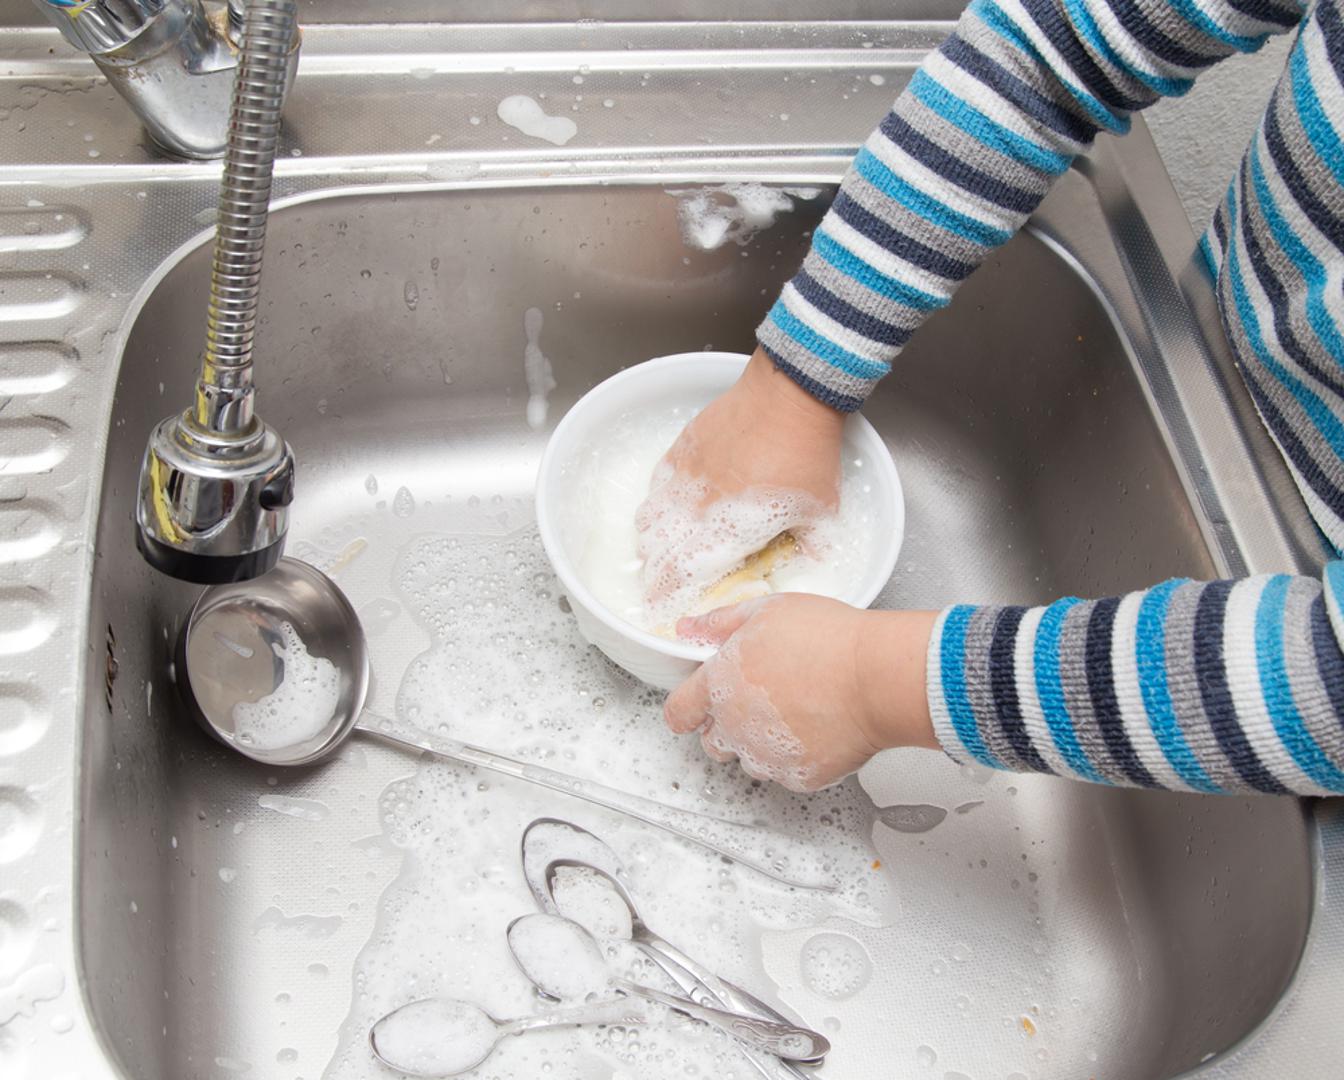 Sudoper - Ostaci hrane nerijetko ostanu u otvoru sudopera i prava su podloga za razvijanje bakterija. S vremena na vrijeme sjetite se očistiti i odvod sudopera kako biste spriječili neželjene mirise i eventualne zdravstvene probleme. 